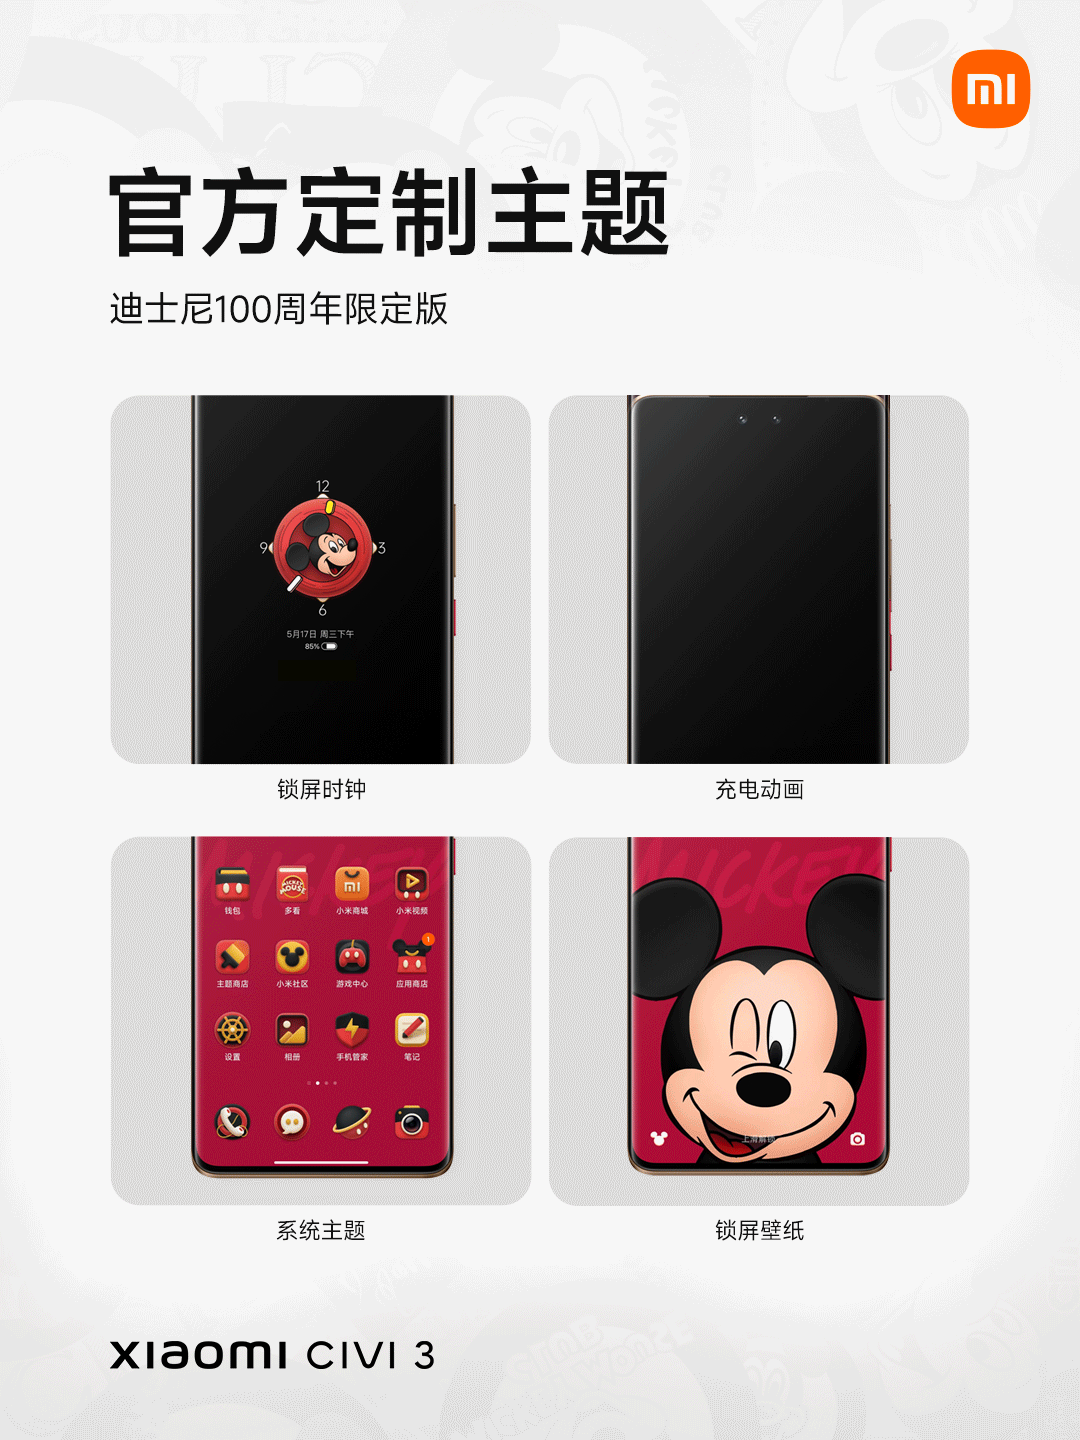 Themes độc quyền trên Xiaomi Civi 3 Disney 100th Anniversary Limited Edition